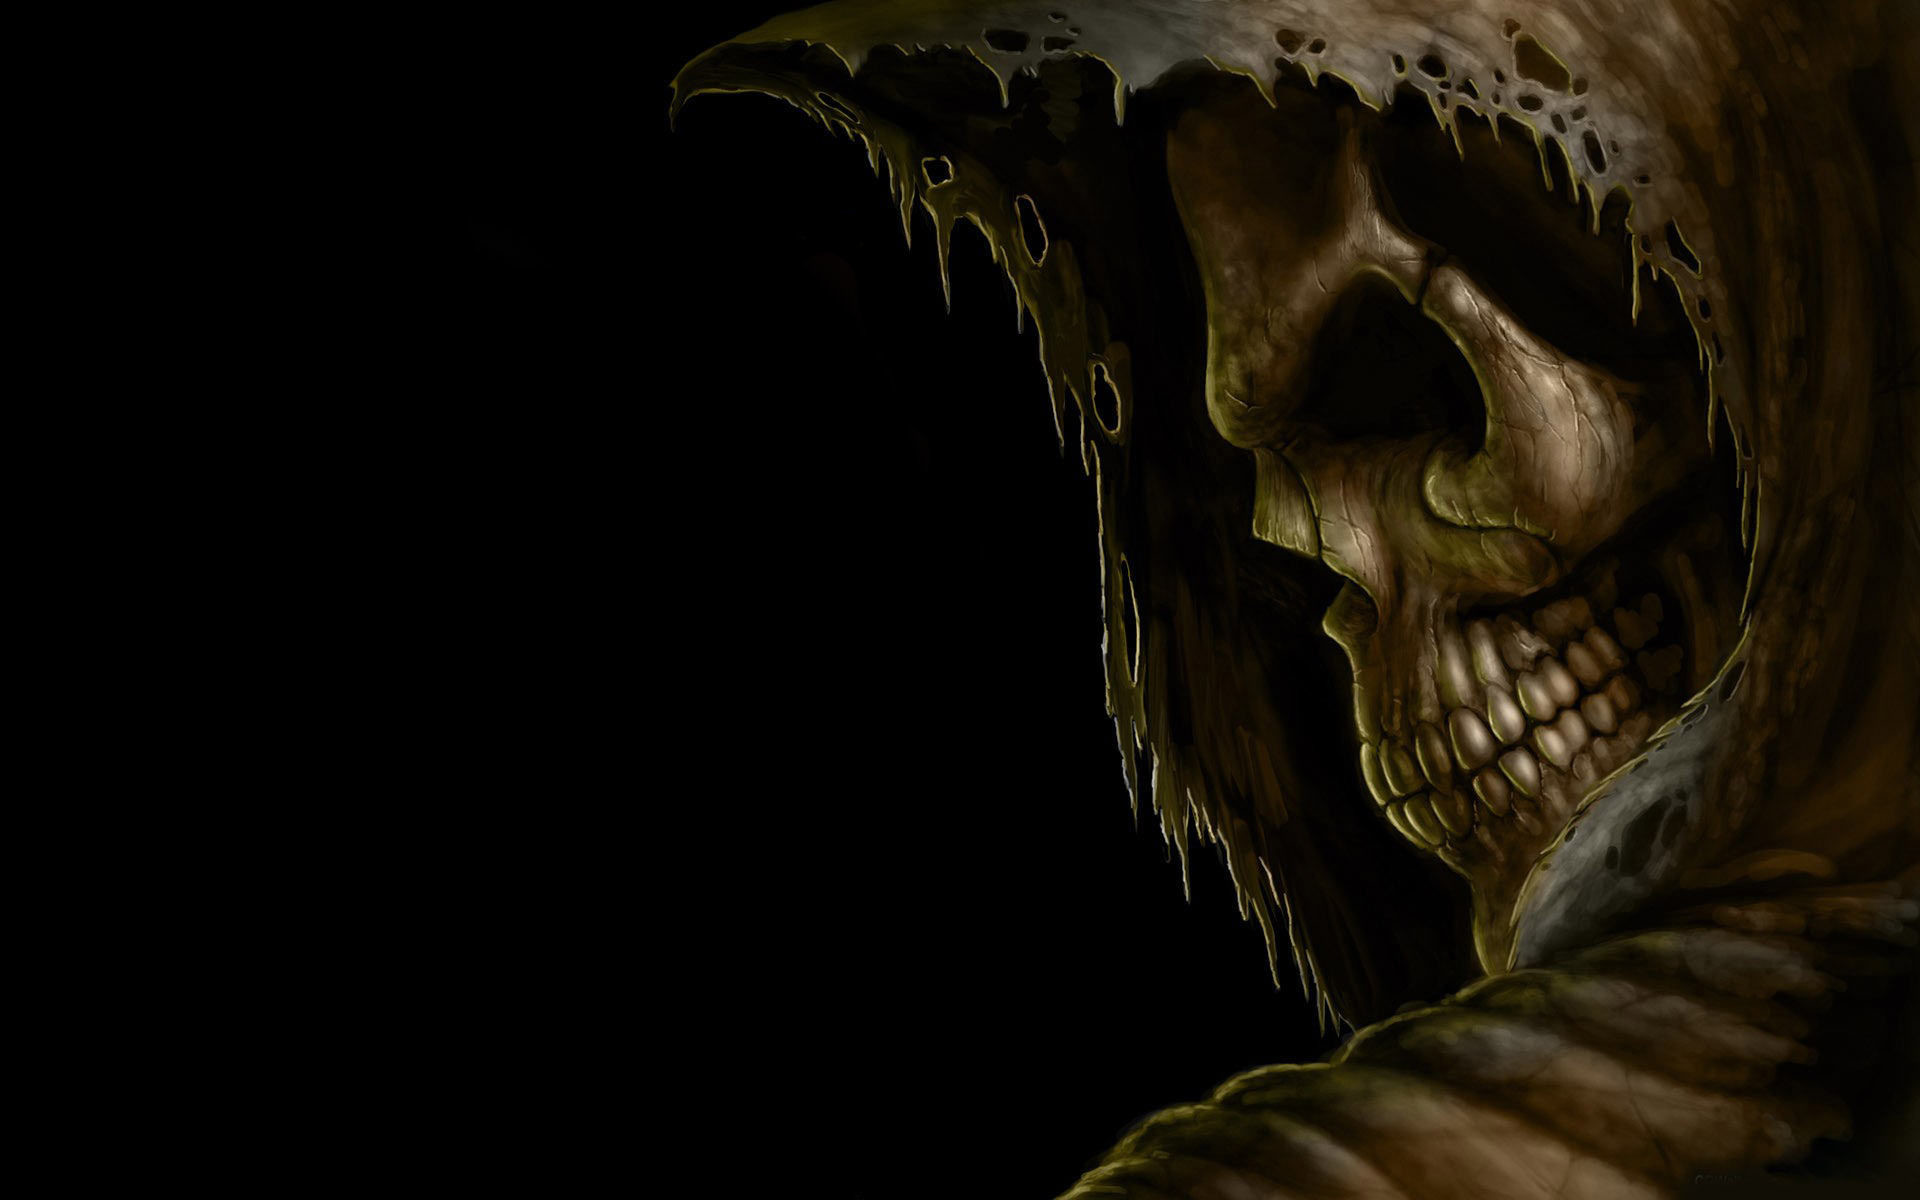 1920x1200 Grim reaper death dark skull hood eyes evil scary spooky creepy teeth black halloween  wallpaper |  | 25646 | WallpaperUP